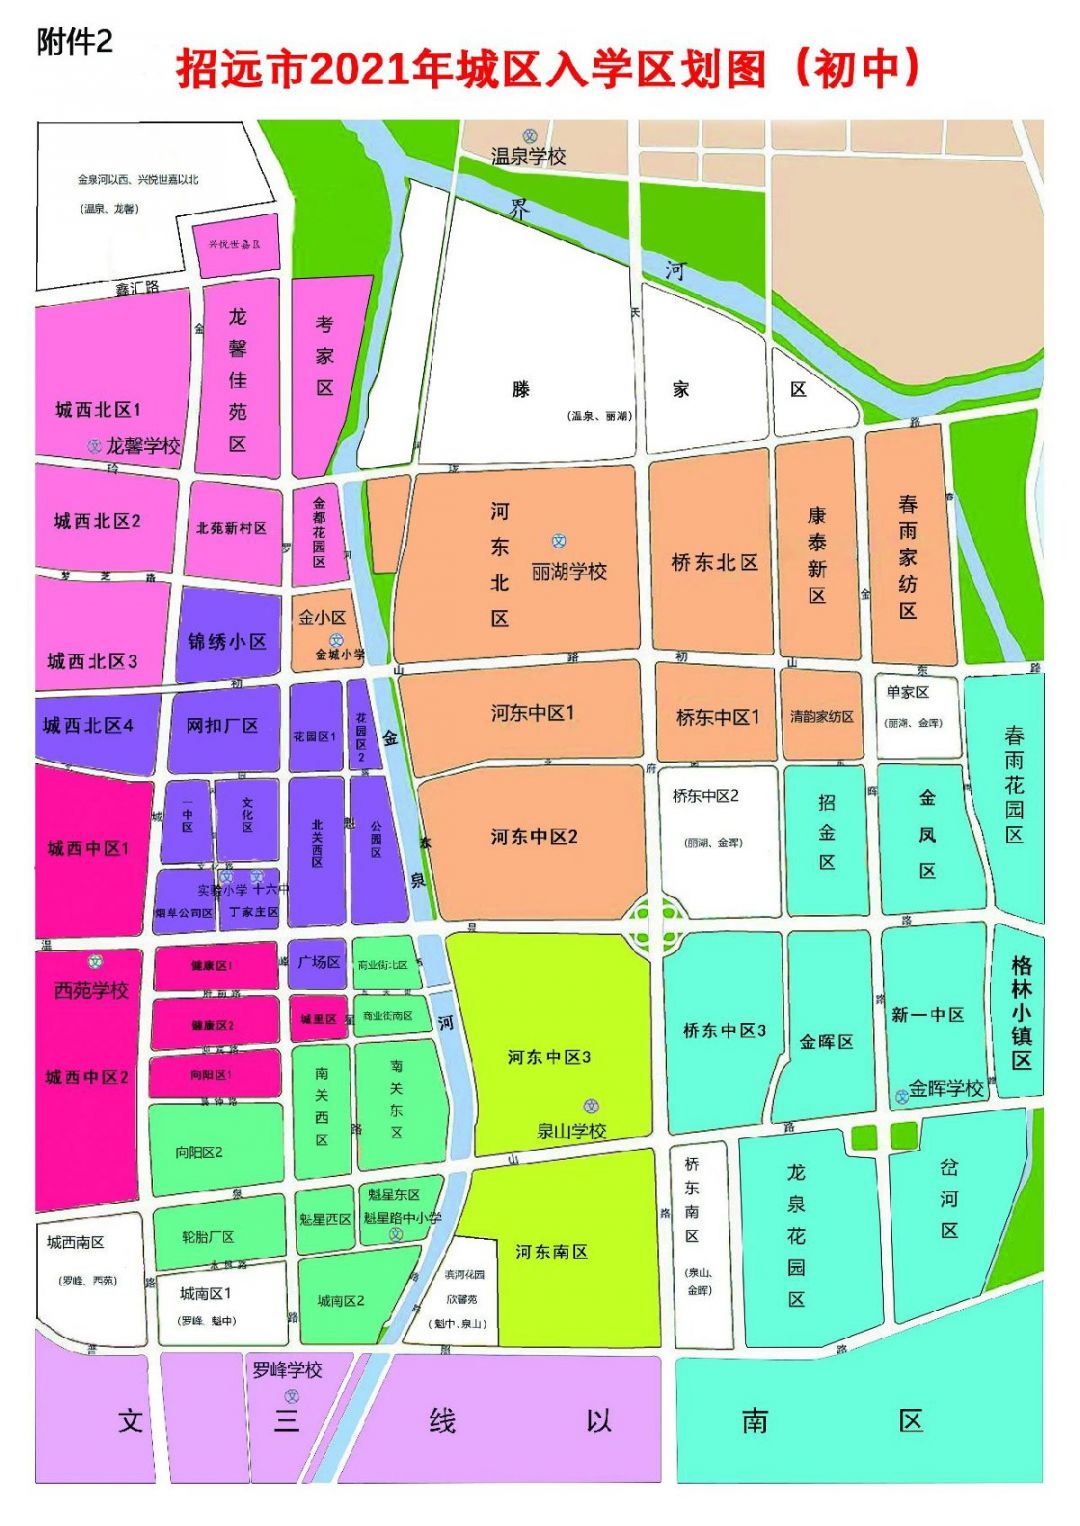 2021年招远市城区小学初中招生区域划分(附划分图)